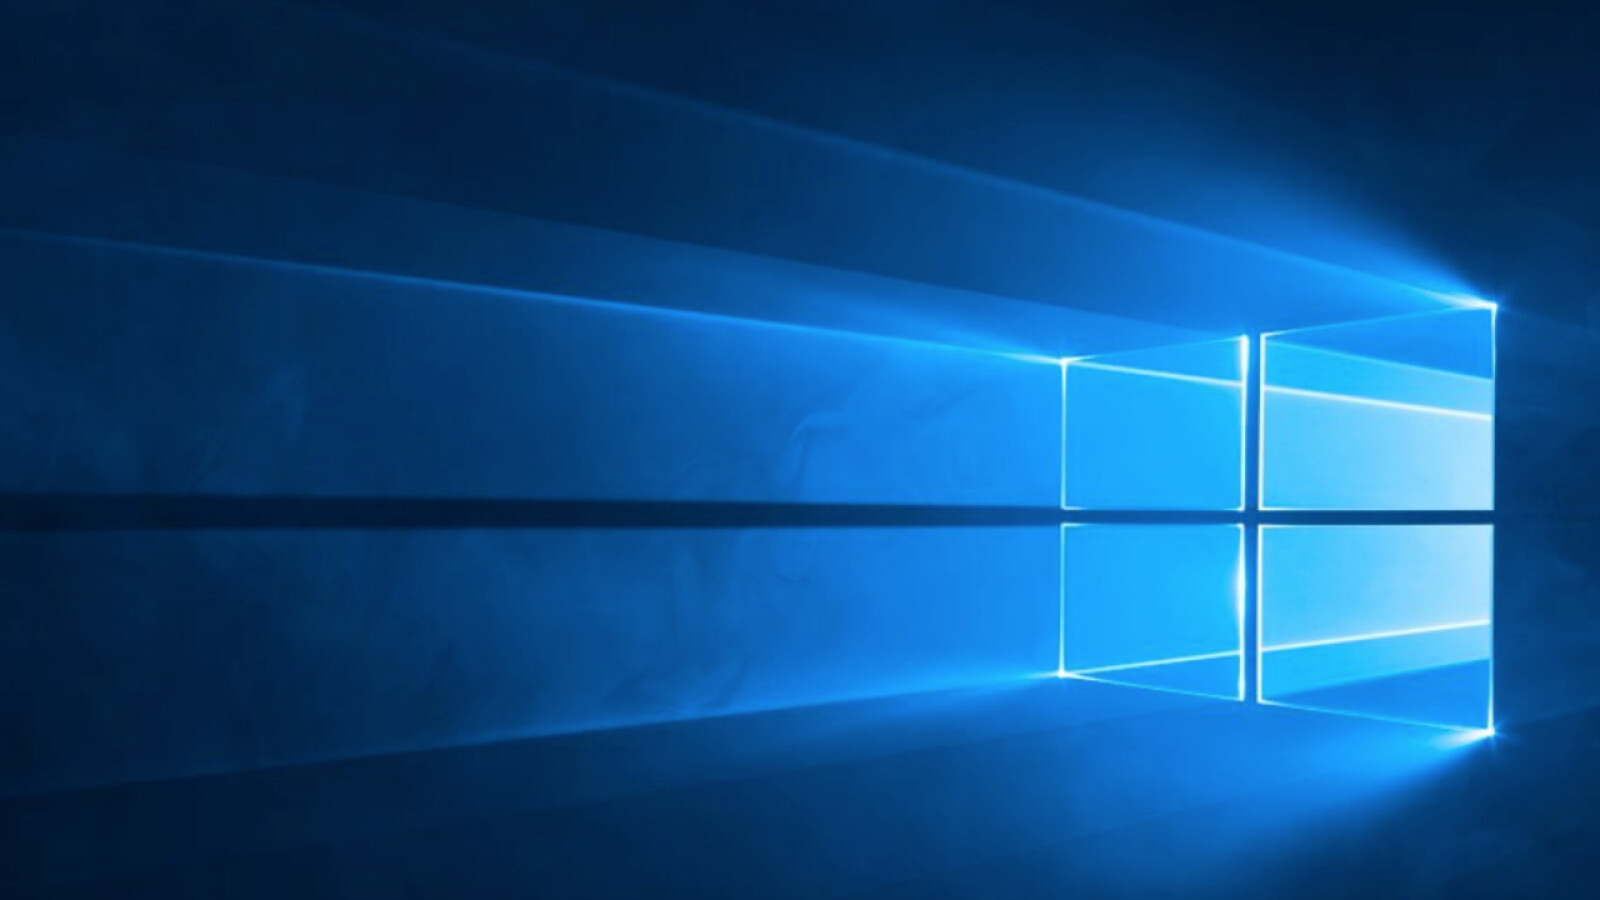 Windows 10: Microsoft verlängert Frist für kostenloses Update abermals - NETZWELT1600 x 900